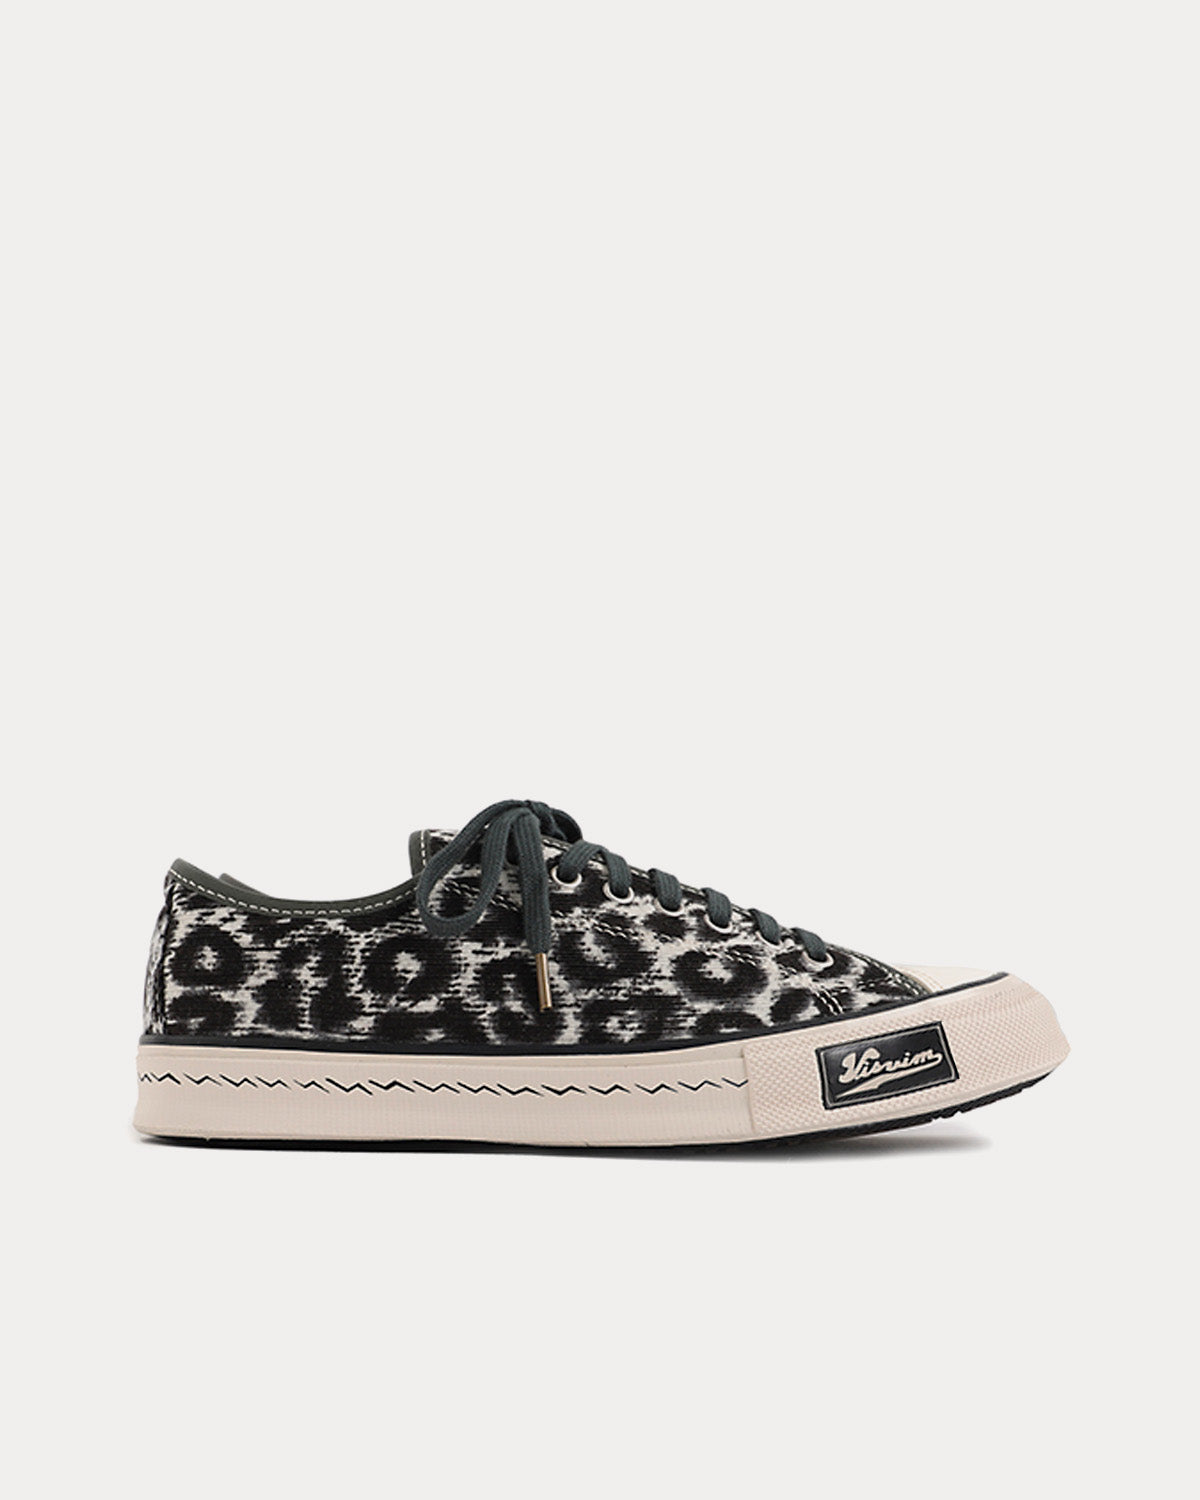 Visvim Skagway Lo Leopard Grey Low Top Sneakers - Sneak in Peace